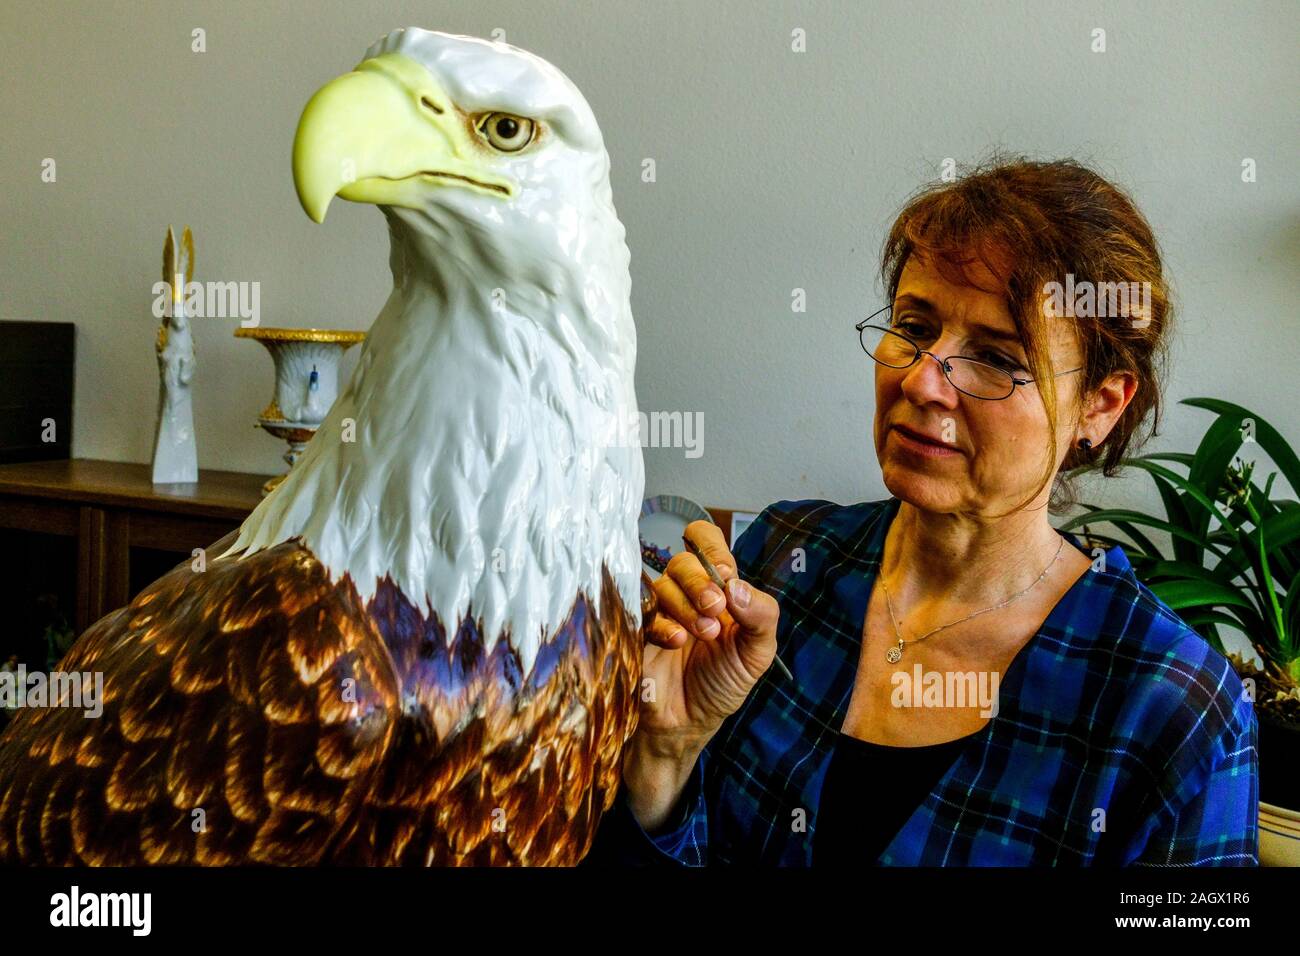 Meißen Porzellanfigur Adler, die Frau in der Kunstwerkstatt schmücken Weißkopfadler Meißen Deutschland Stockfoto